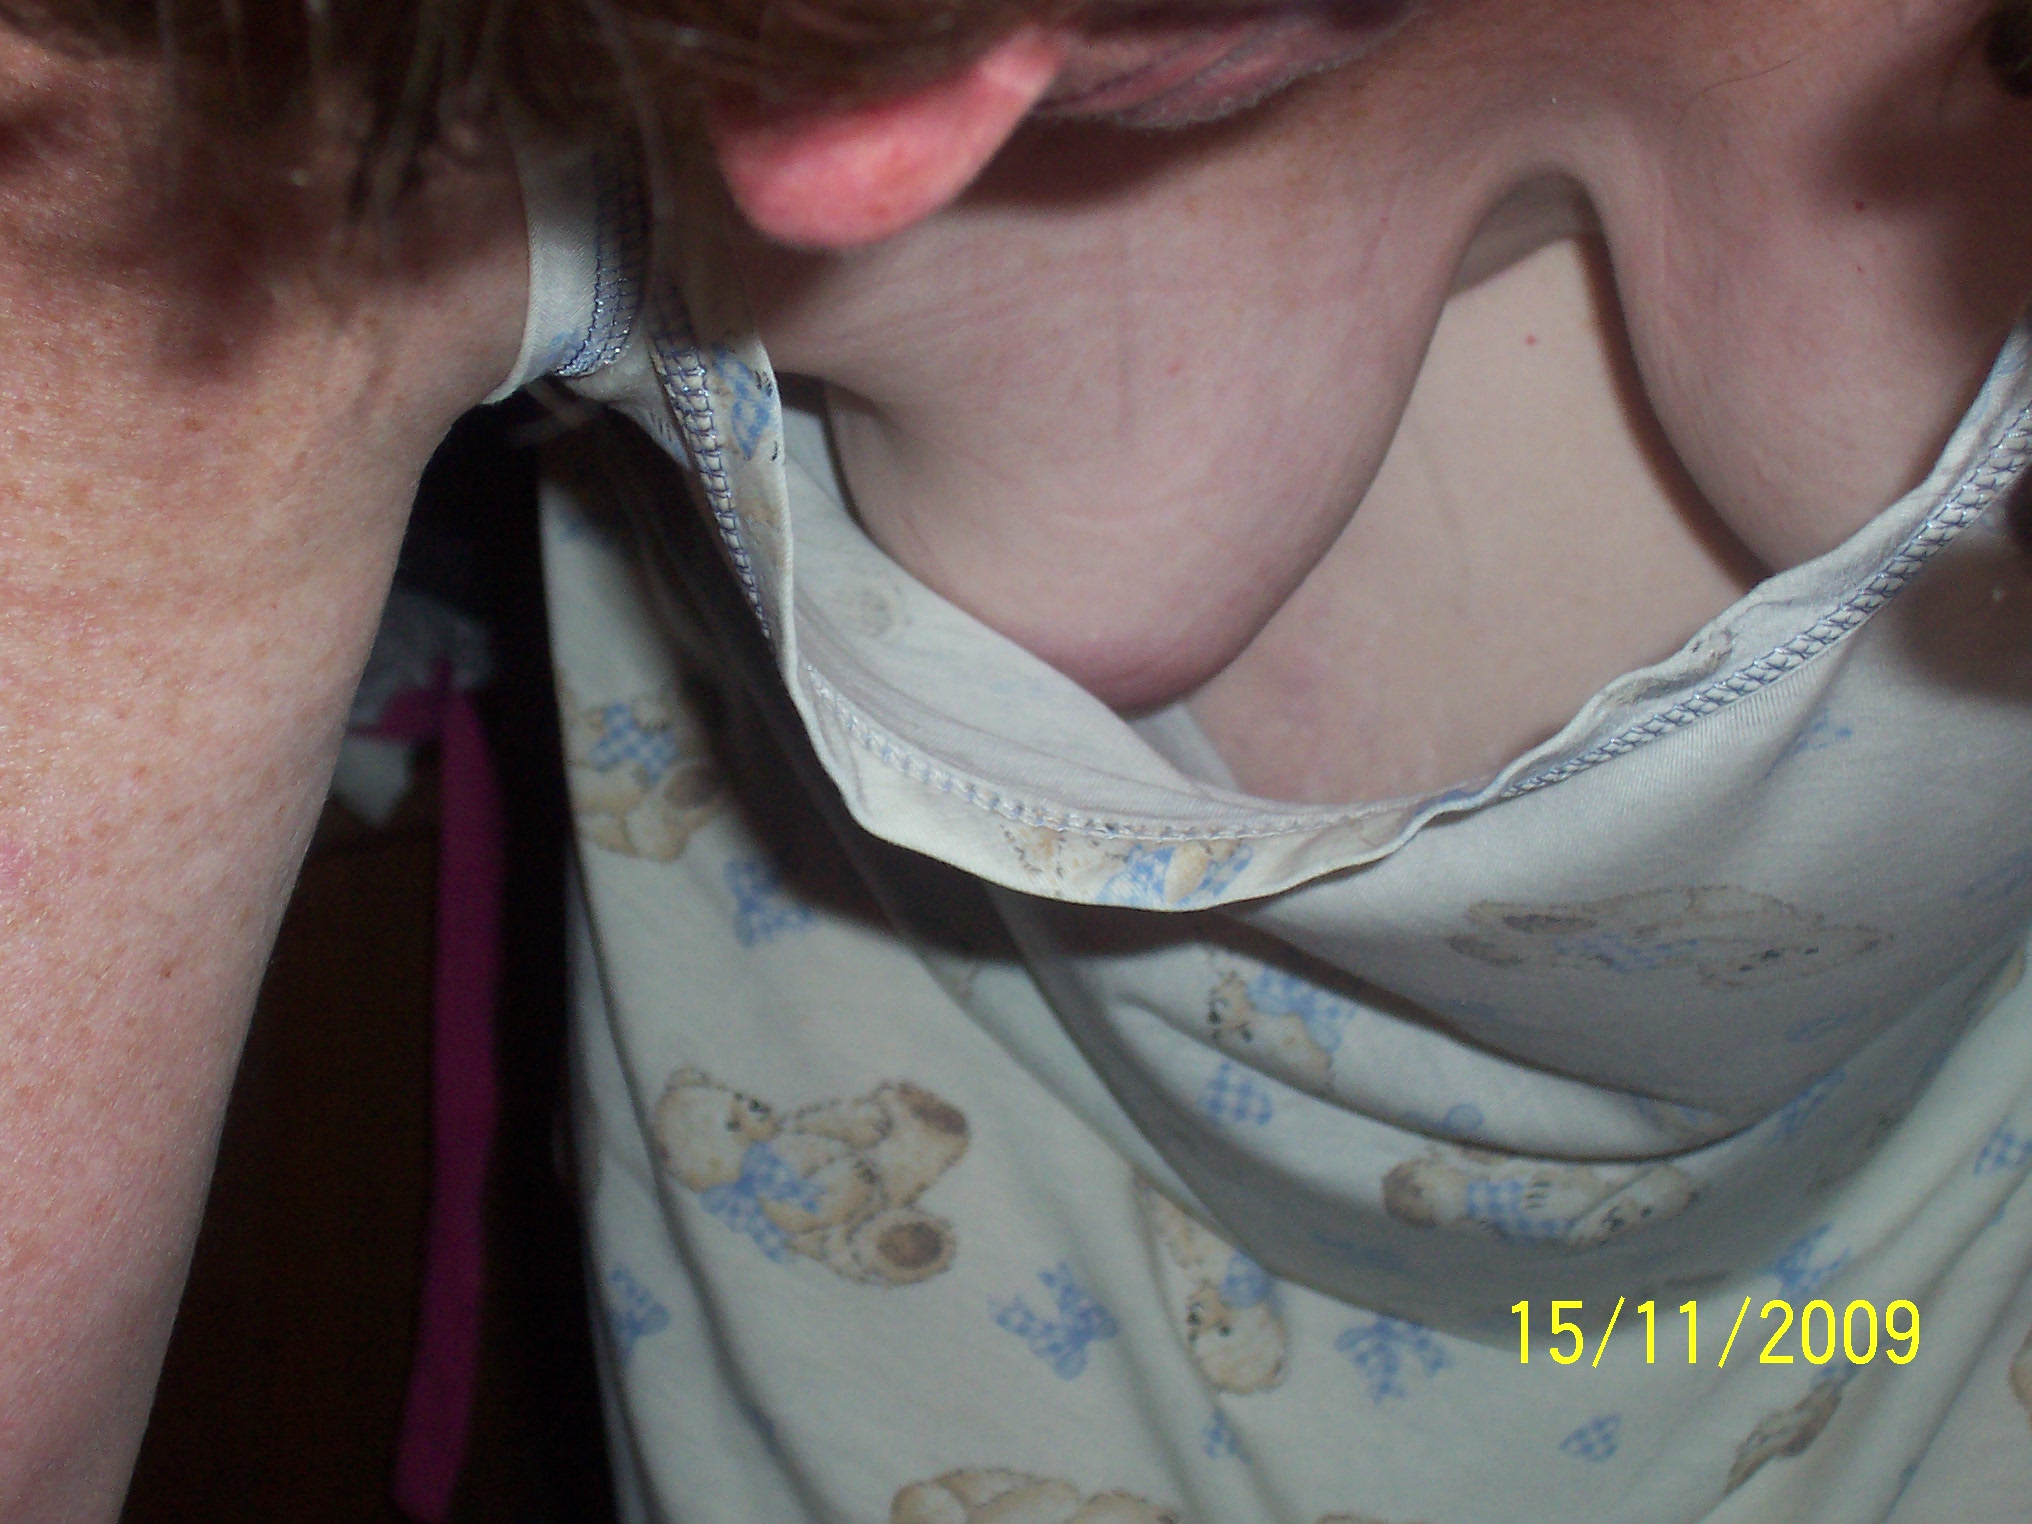 amateur blouse down pic